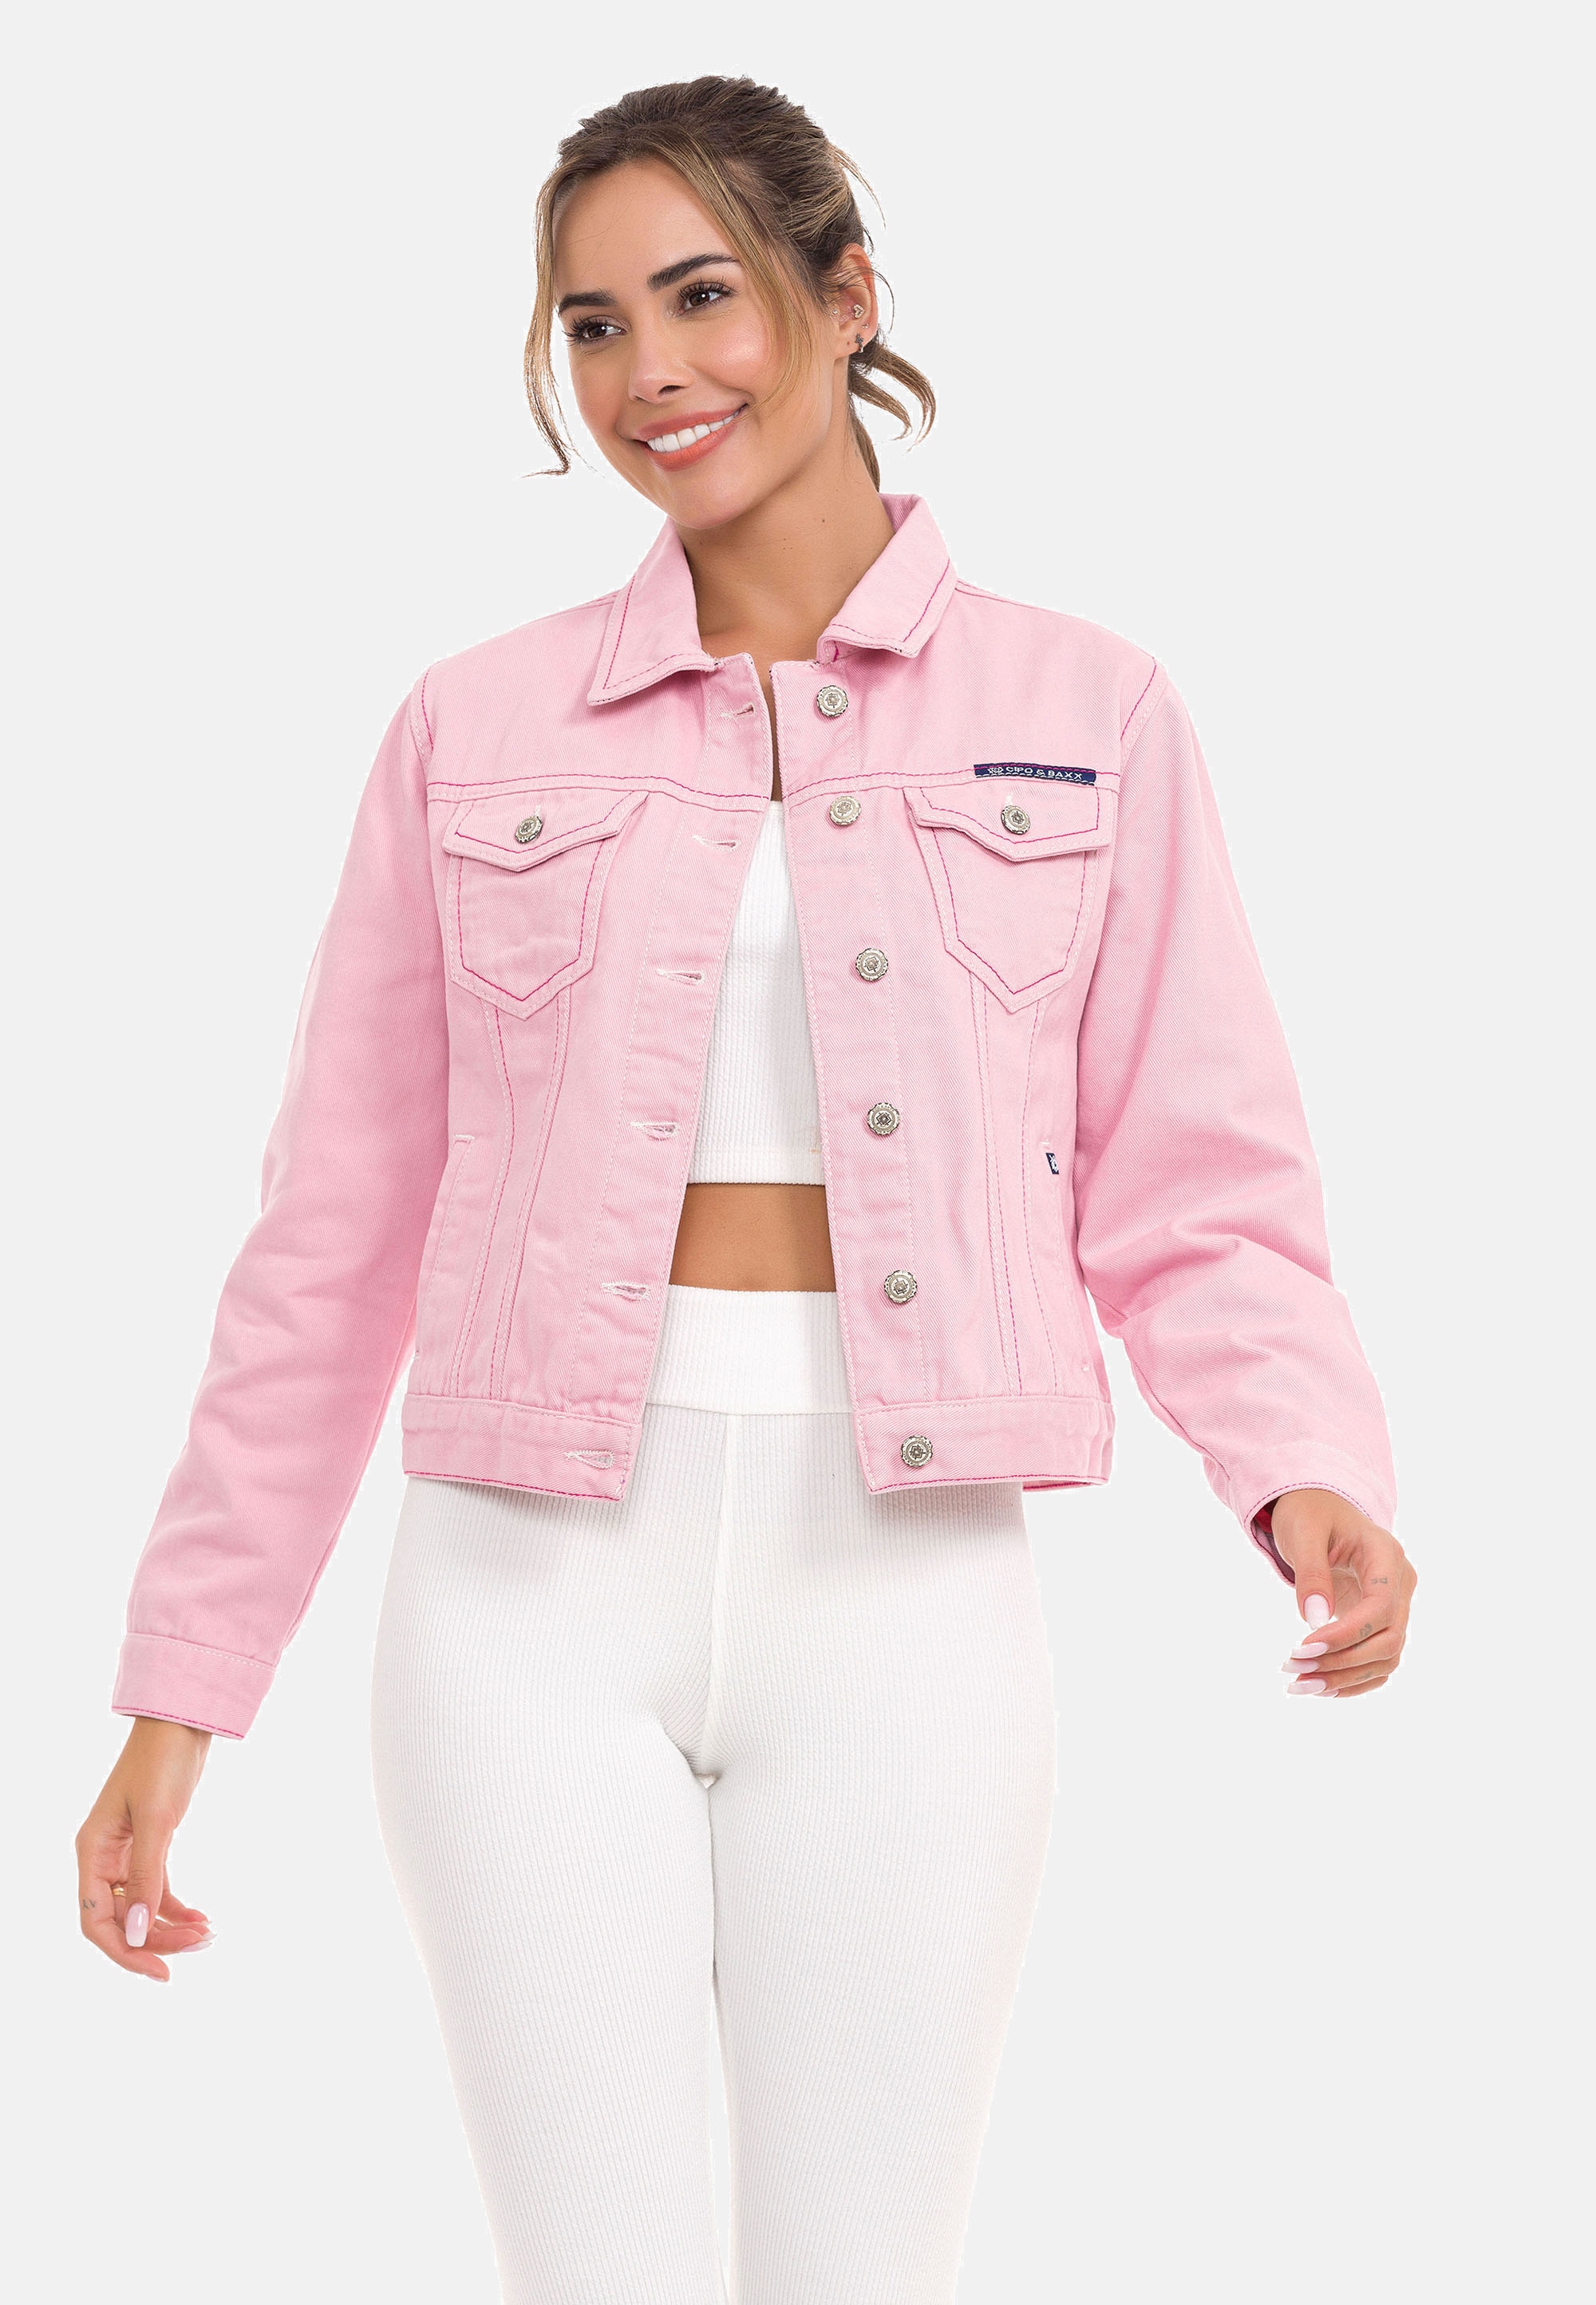 Jacken rosa online kaufen » I'm walking